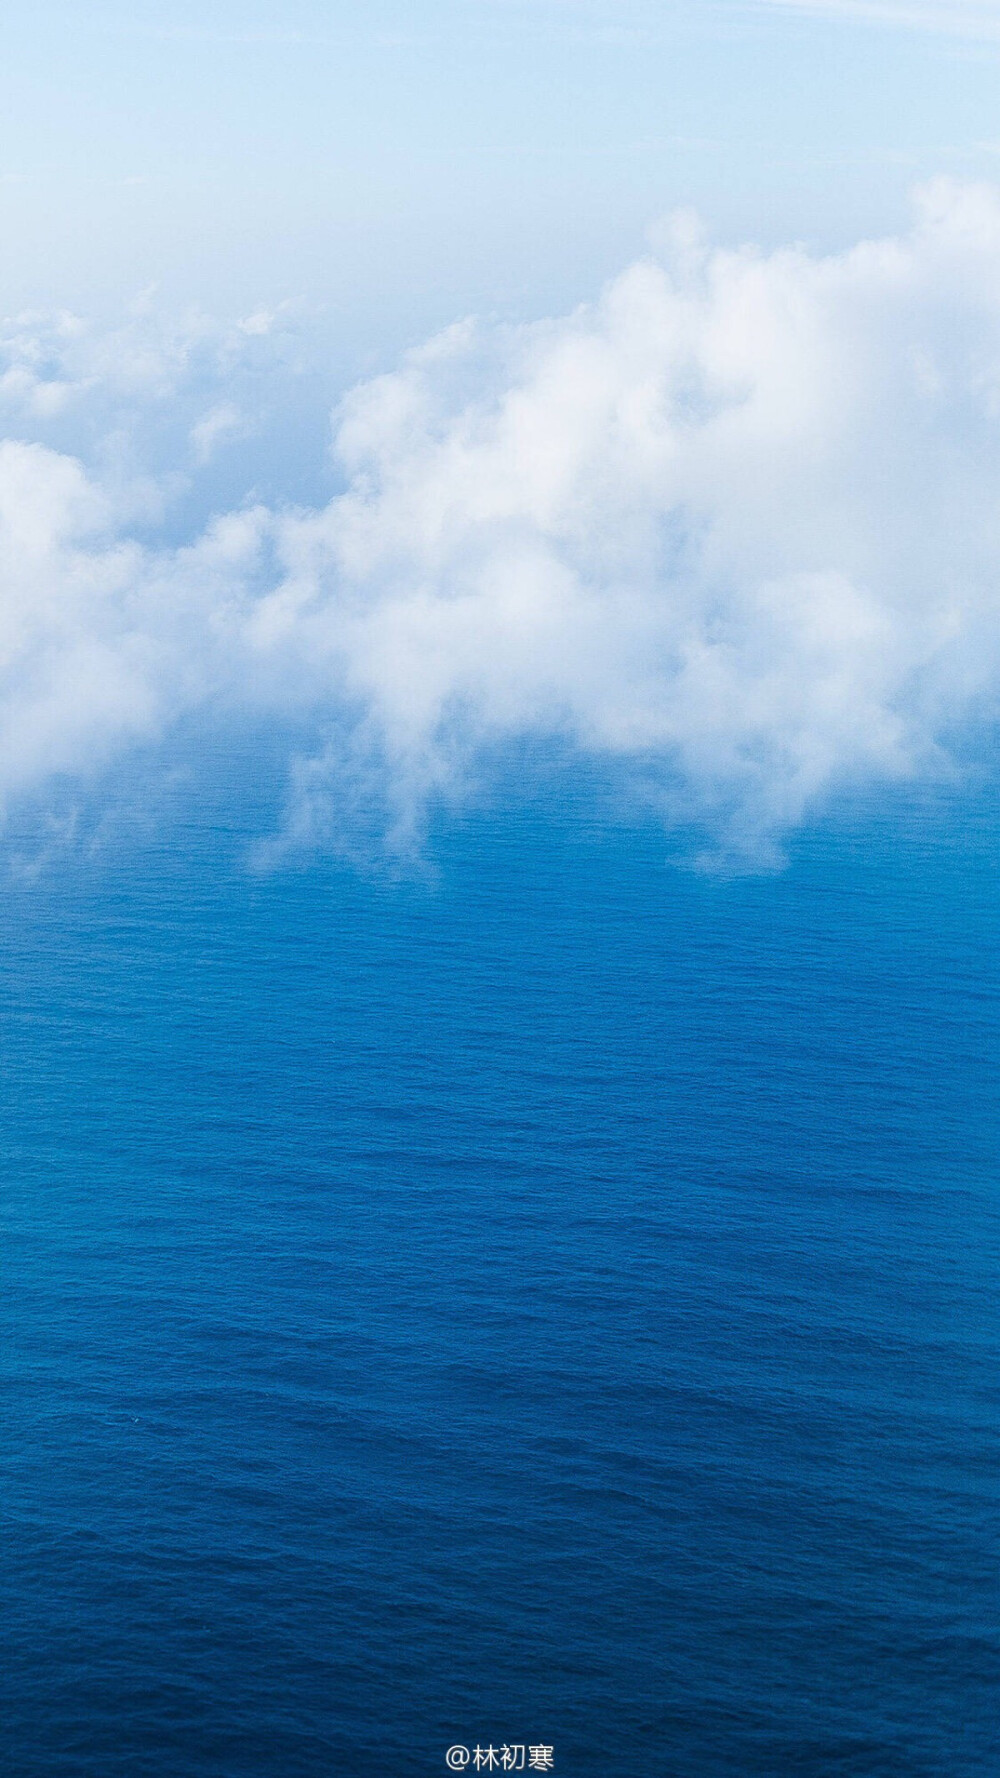 风景意象图 蓝天白云大海 手机壁纸摄影师林… 